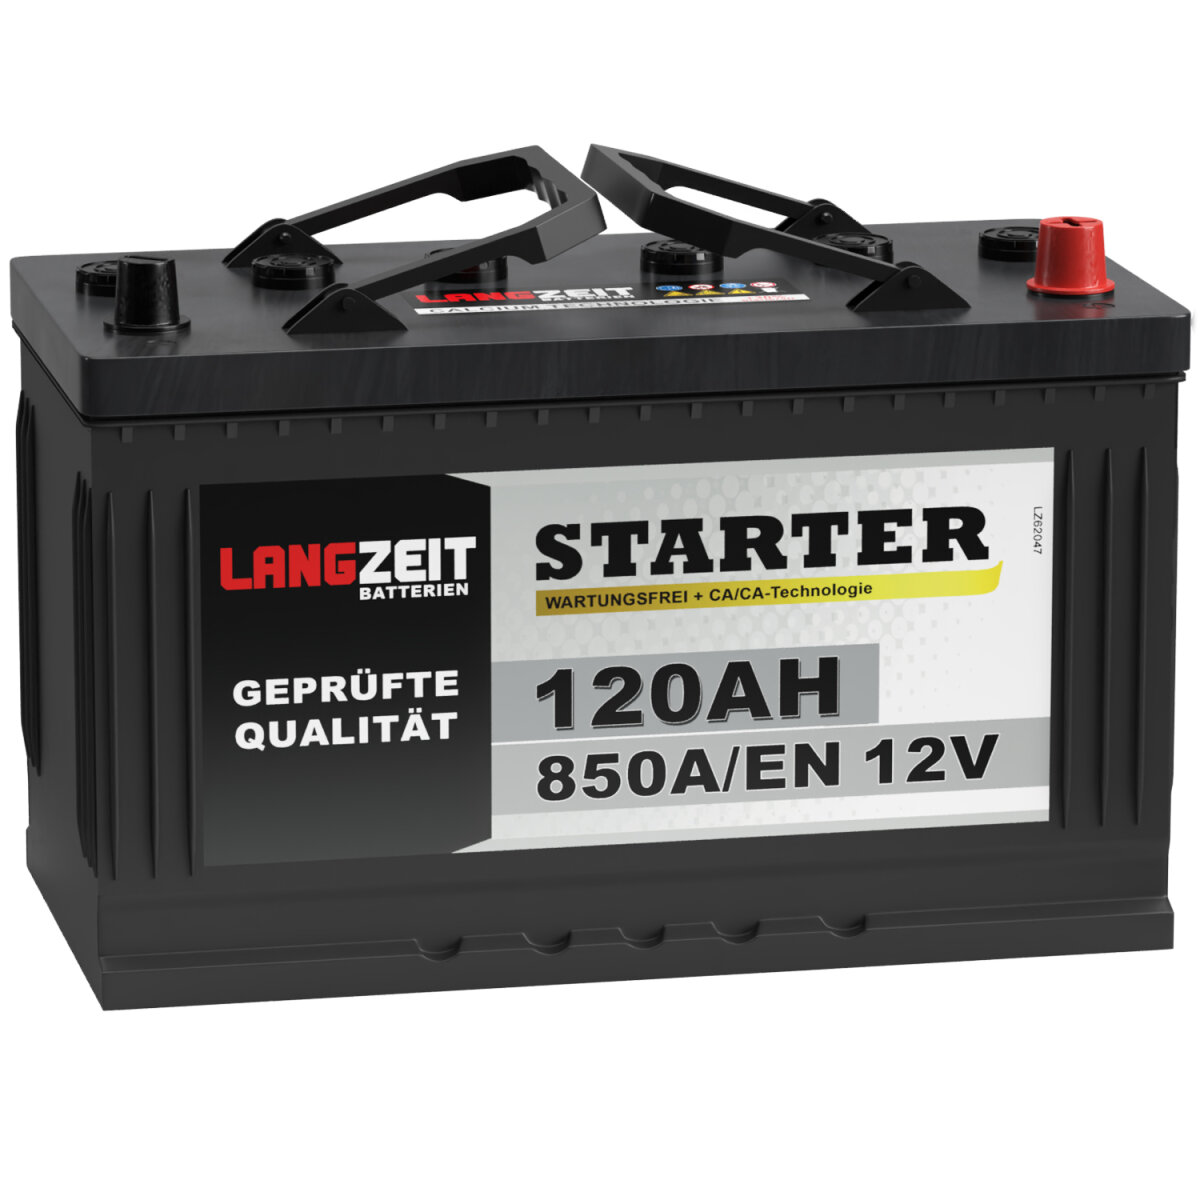 https://www.winnerbatterien.de/media/image/product/623/lg/langzeit-starterbatterie-120ah-12v.jpg